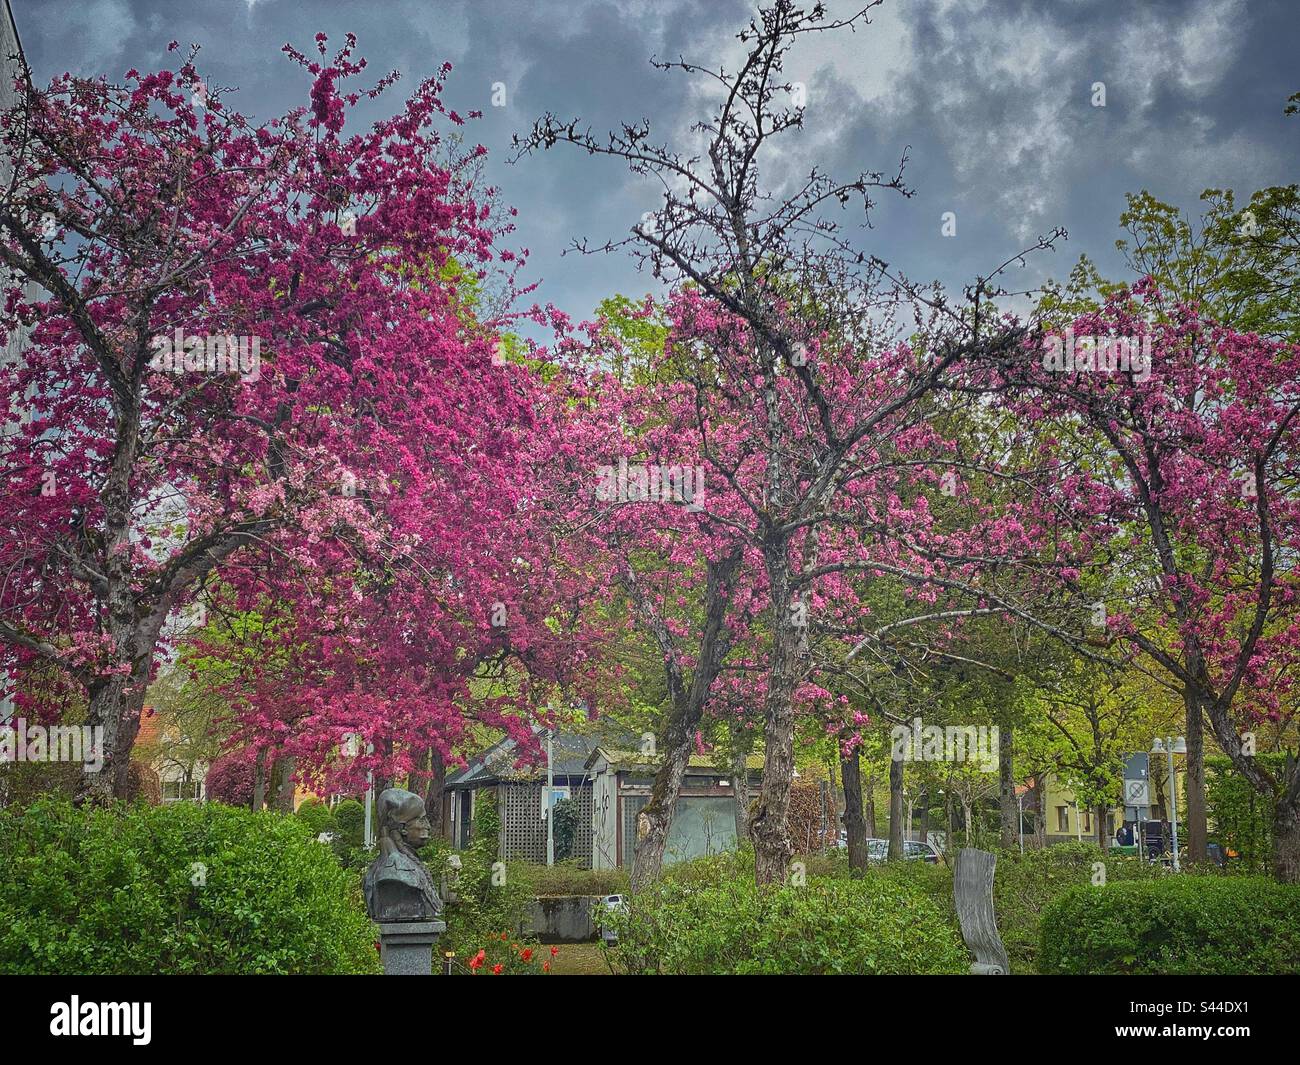 Cerisiers fleuris de différentes nuances de rose vif dans un quartier résidentiel du sud de Munich, en Allemagne. Banque D'Images